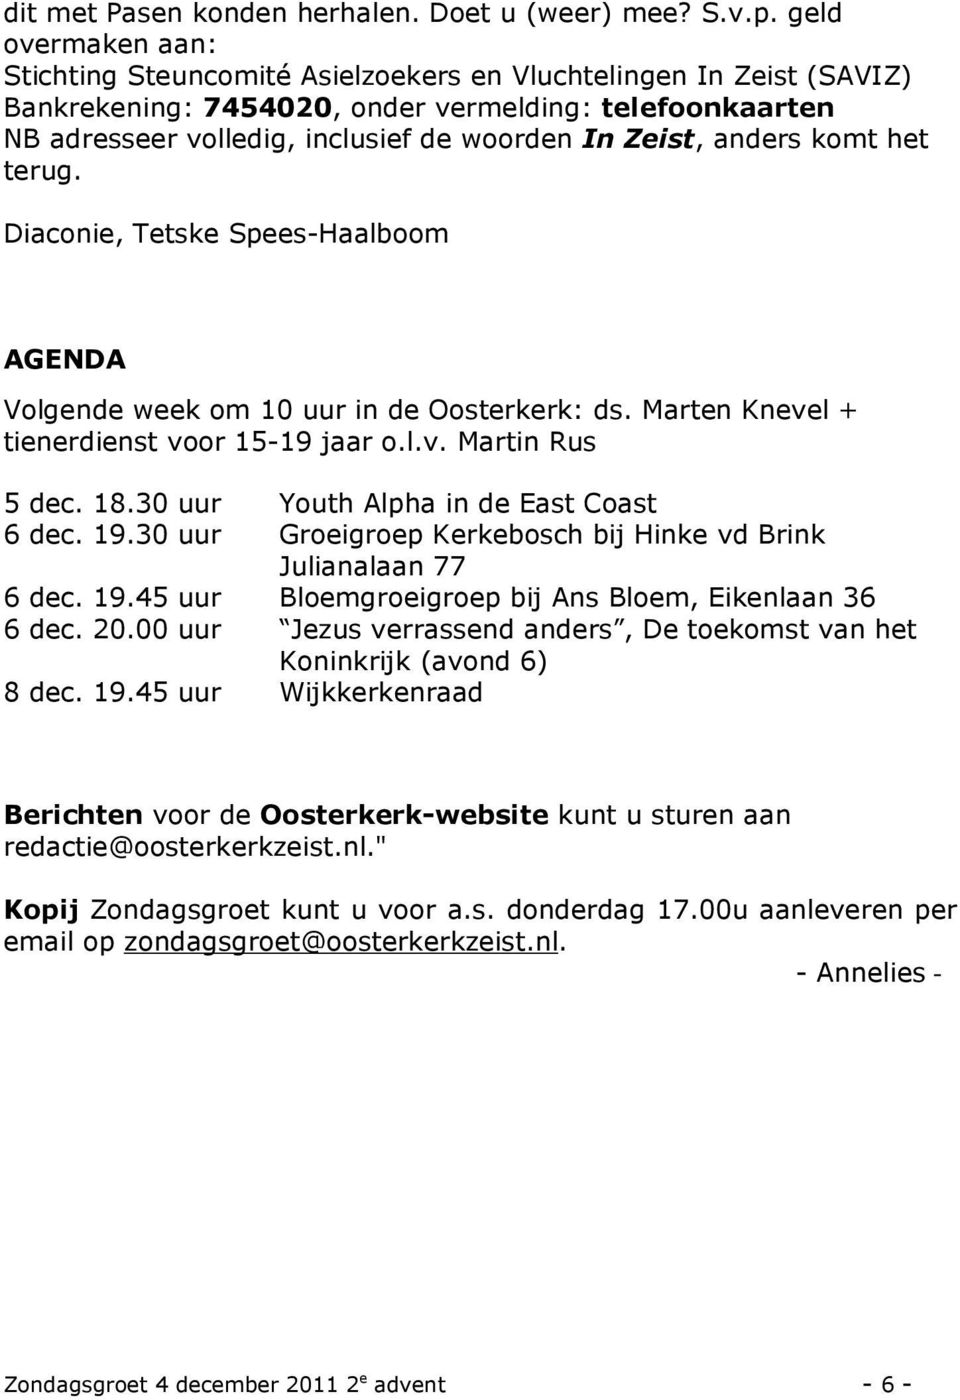 anders komt het terug. Diaconie, Tetske Spees-Haalboom AGENDA Volgende week om 10 uur in de Oosterkerk: ds. Marten Knevel + tienerdienst voor 15-19 jaar o.l.v. Martin Rus 5 dec. 18.